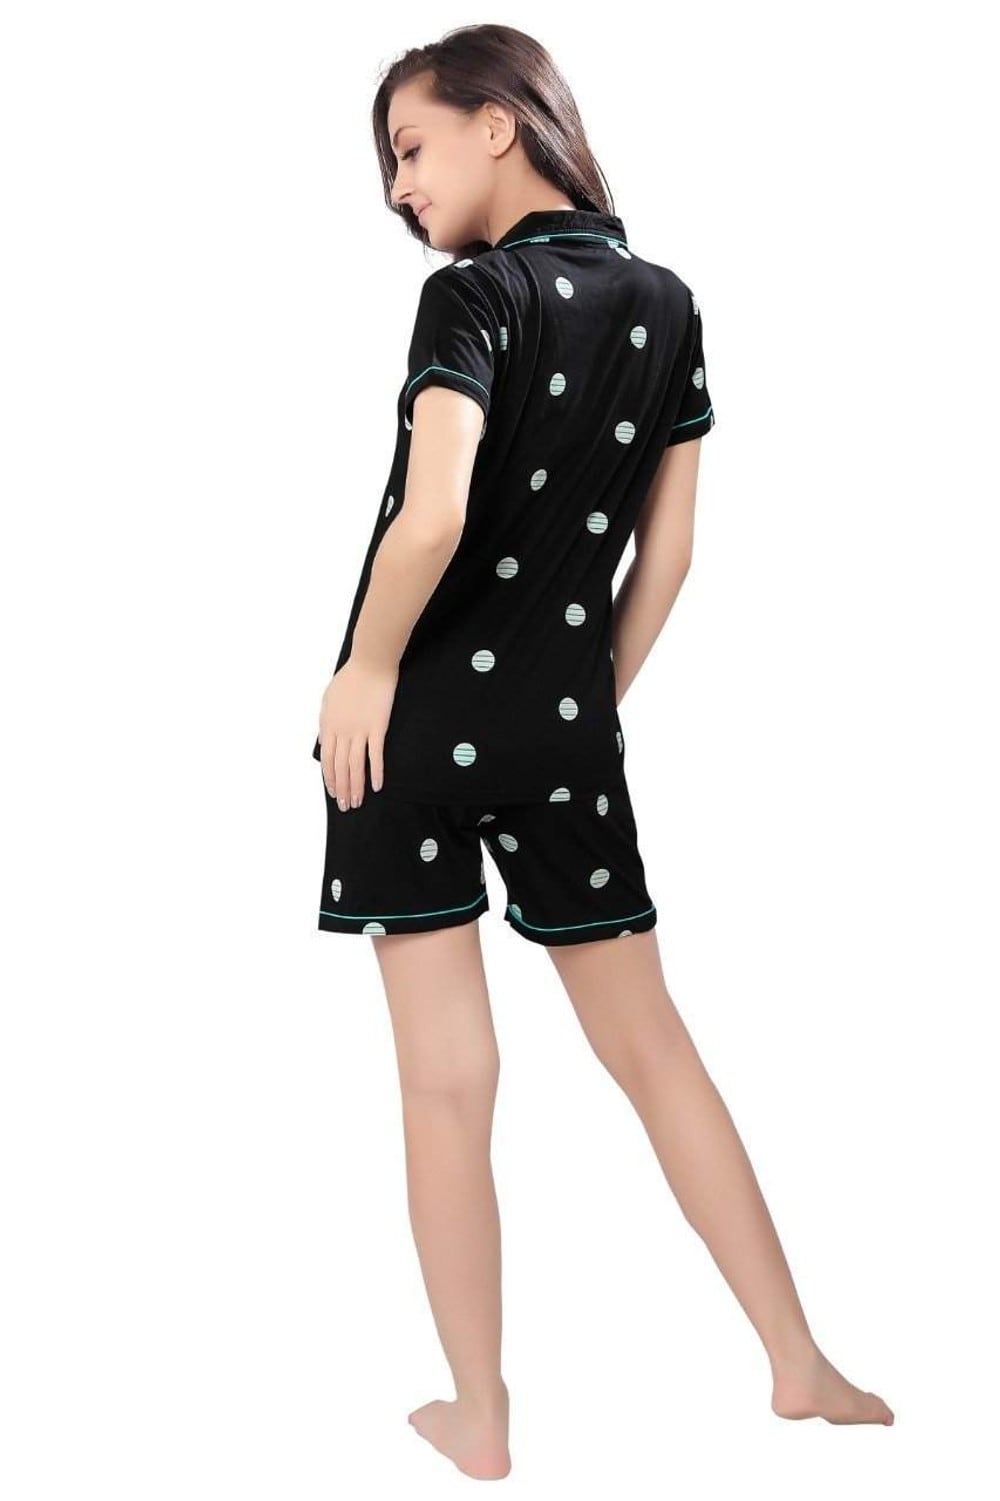 Pierre Donna Women's Cotton Pajama set With Pants - Women Sleepwear Black Color AVL - Dealz Souq